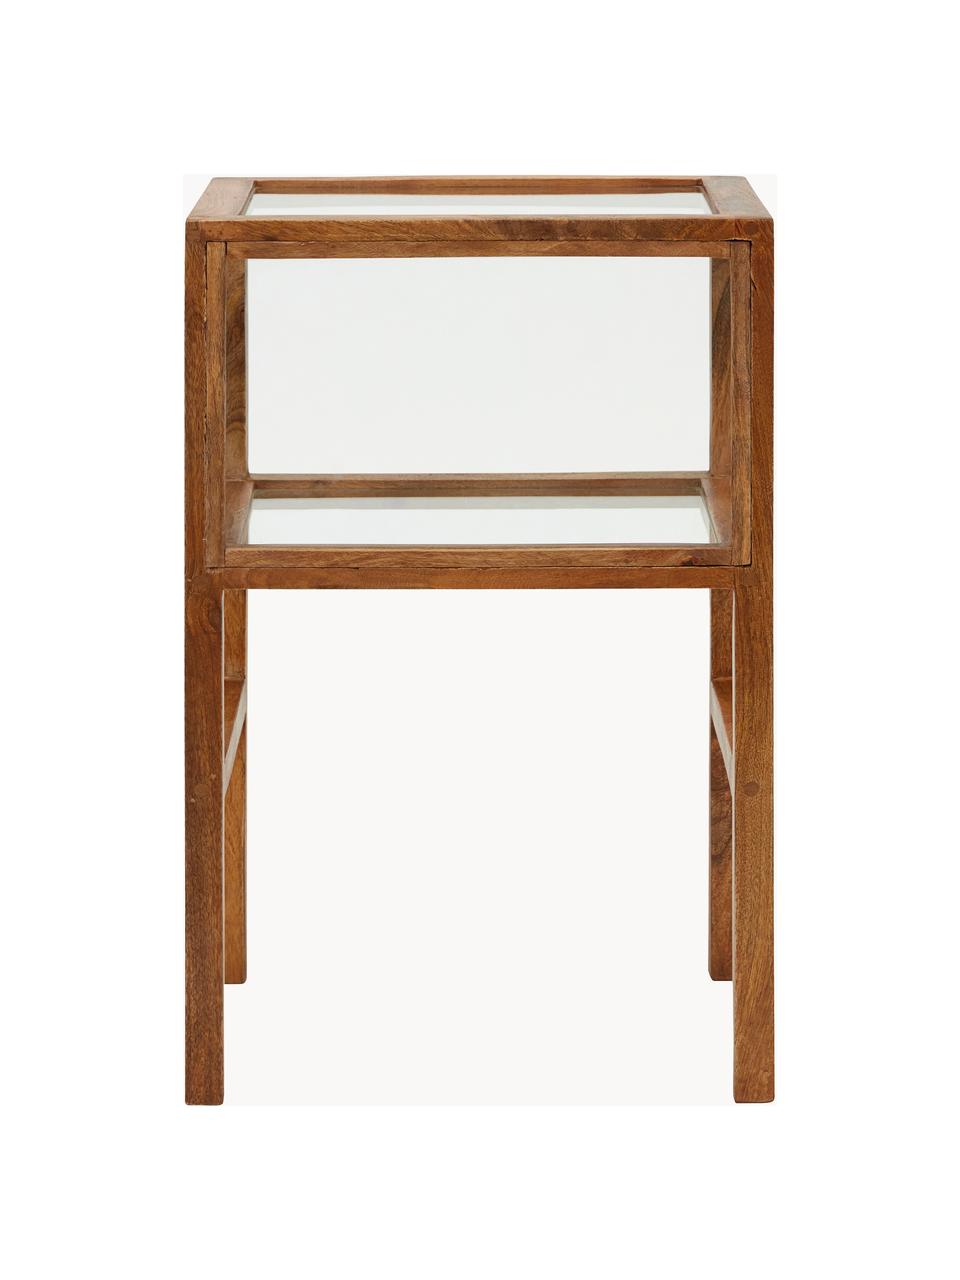 Stolik pomocniczy z drewna mangowego Montre, Stelaż: drewno mangowe, Drewno mangowe, transparentny, S 38 x W 60 cm